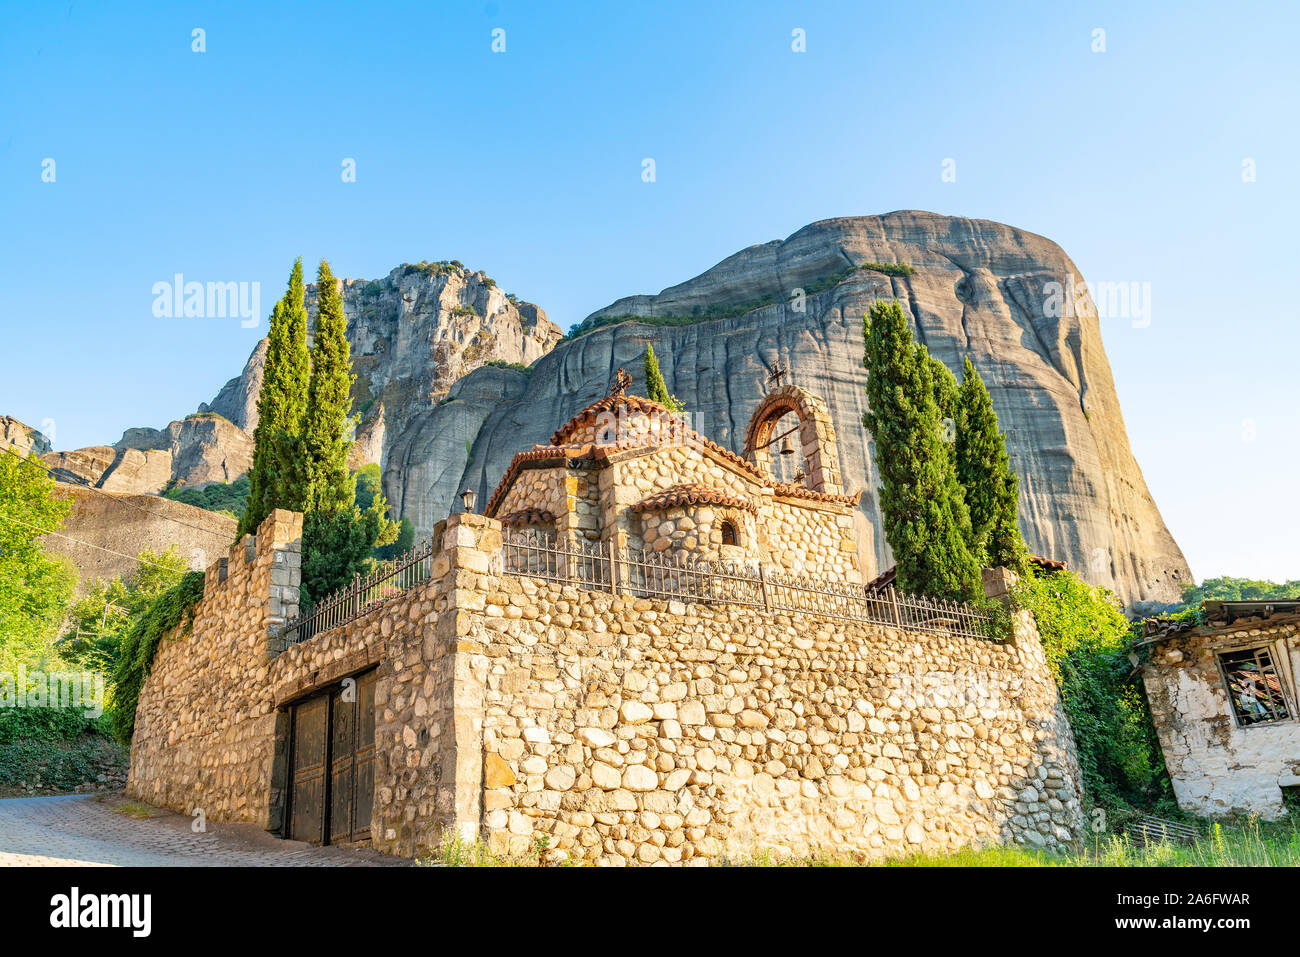 Grandi massi imponenti salire dietro il pittoresco greco ortodossa chiesa di pietra nella città di Kastraki, Meteora in Grecia. Foto Stock